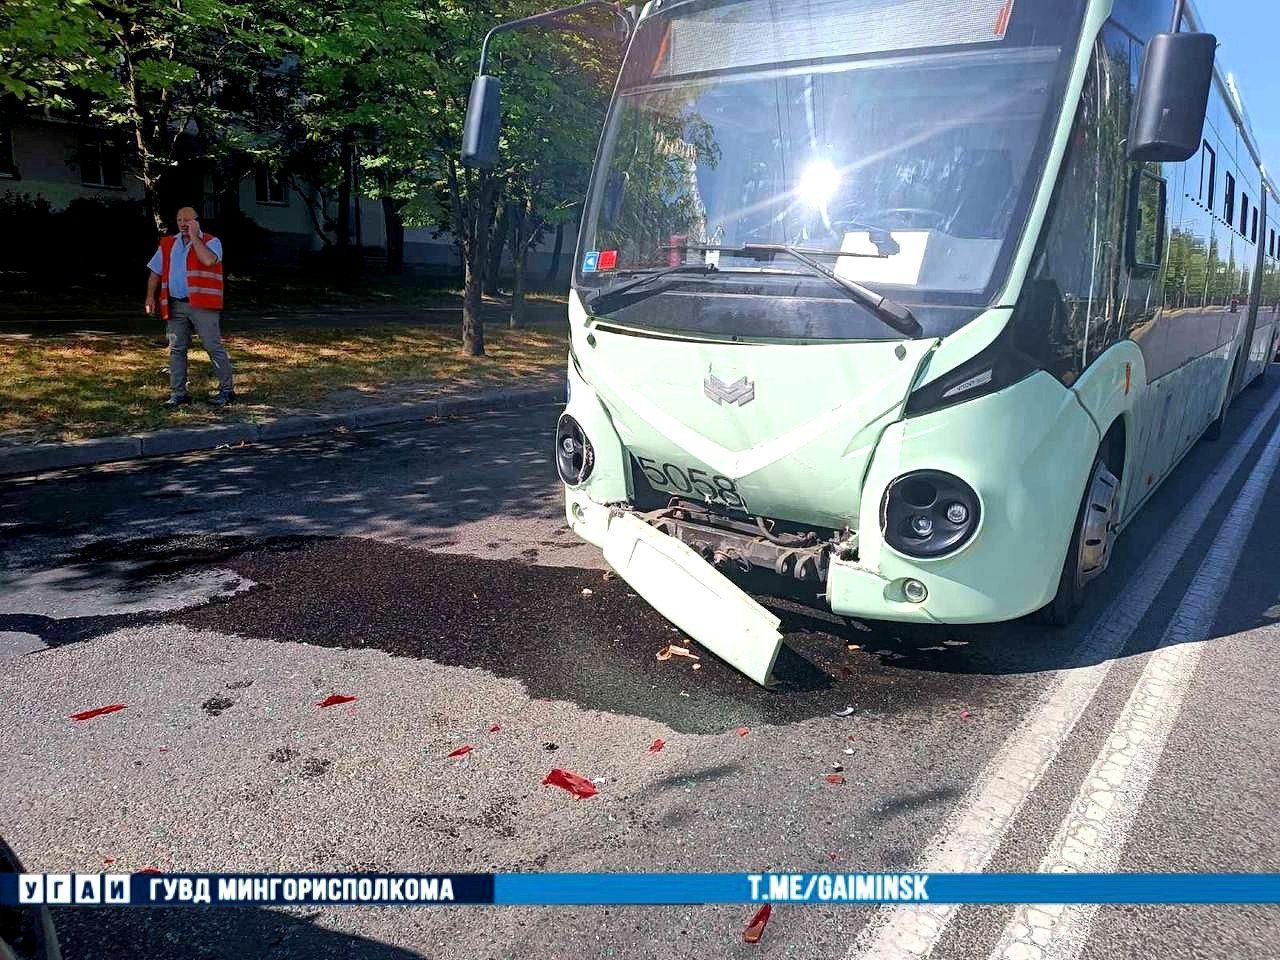 Водитель троллейбуса устроил ДТП в Минске. Нескольких пассажиров отвезли в больницу